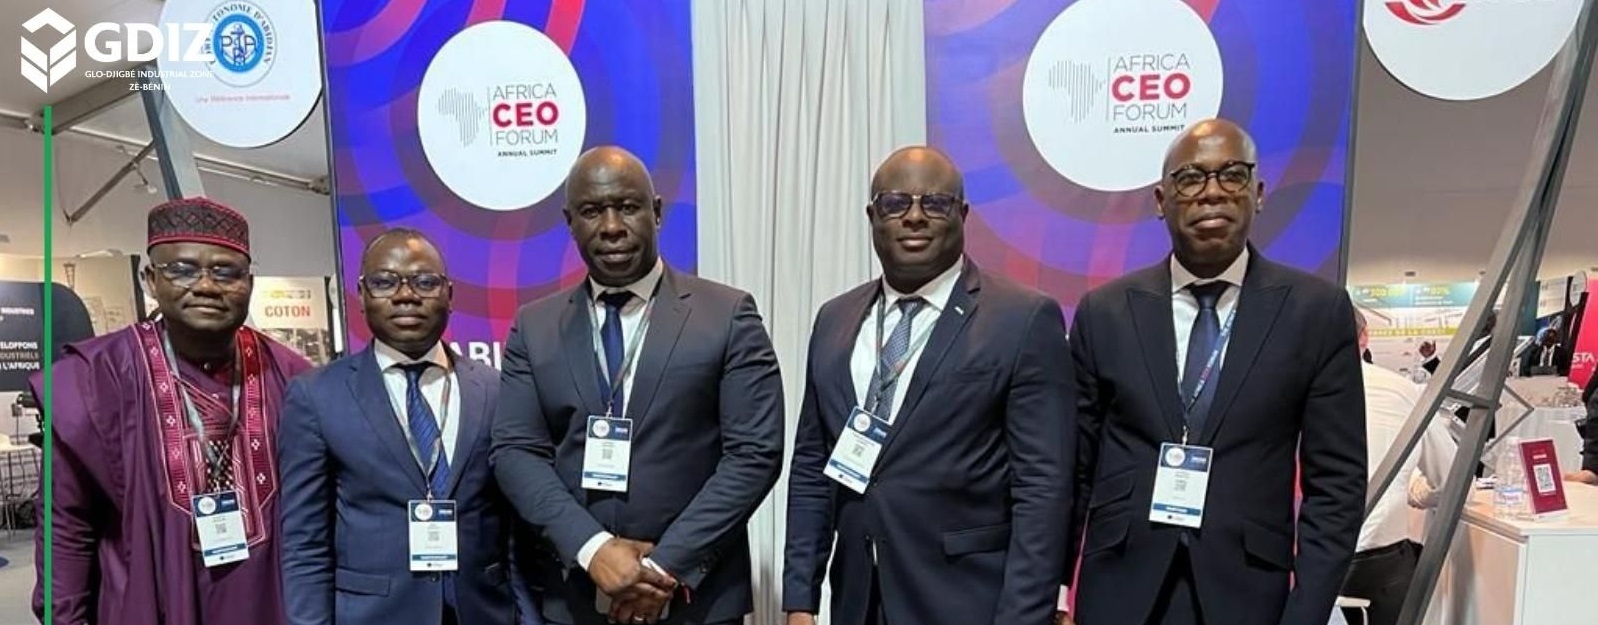 GDIZ participates in the Africa CEO forum